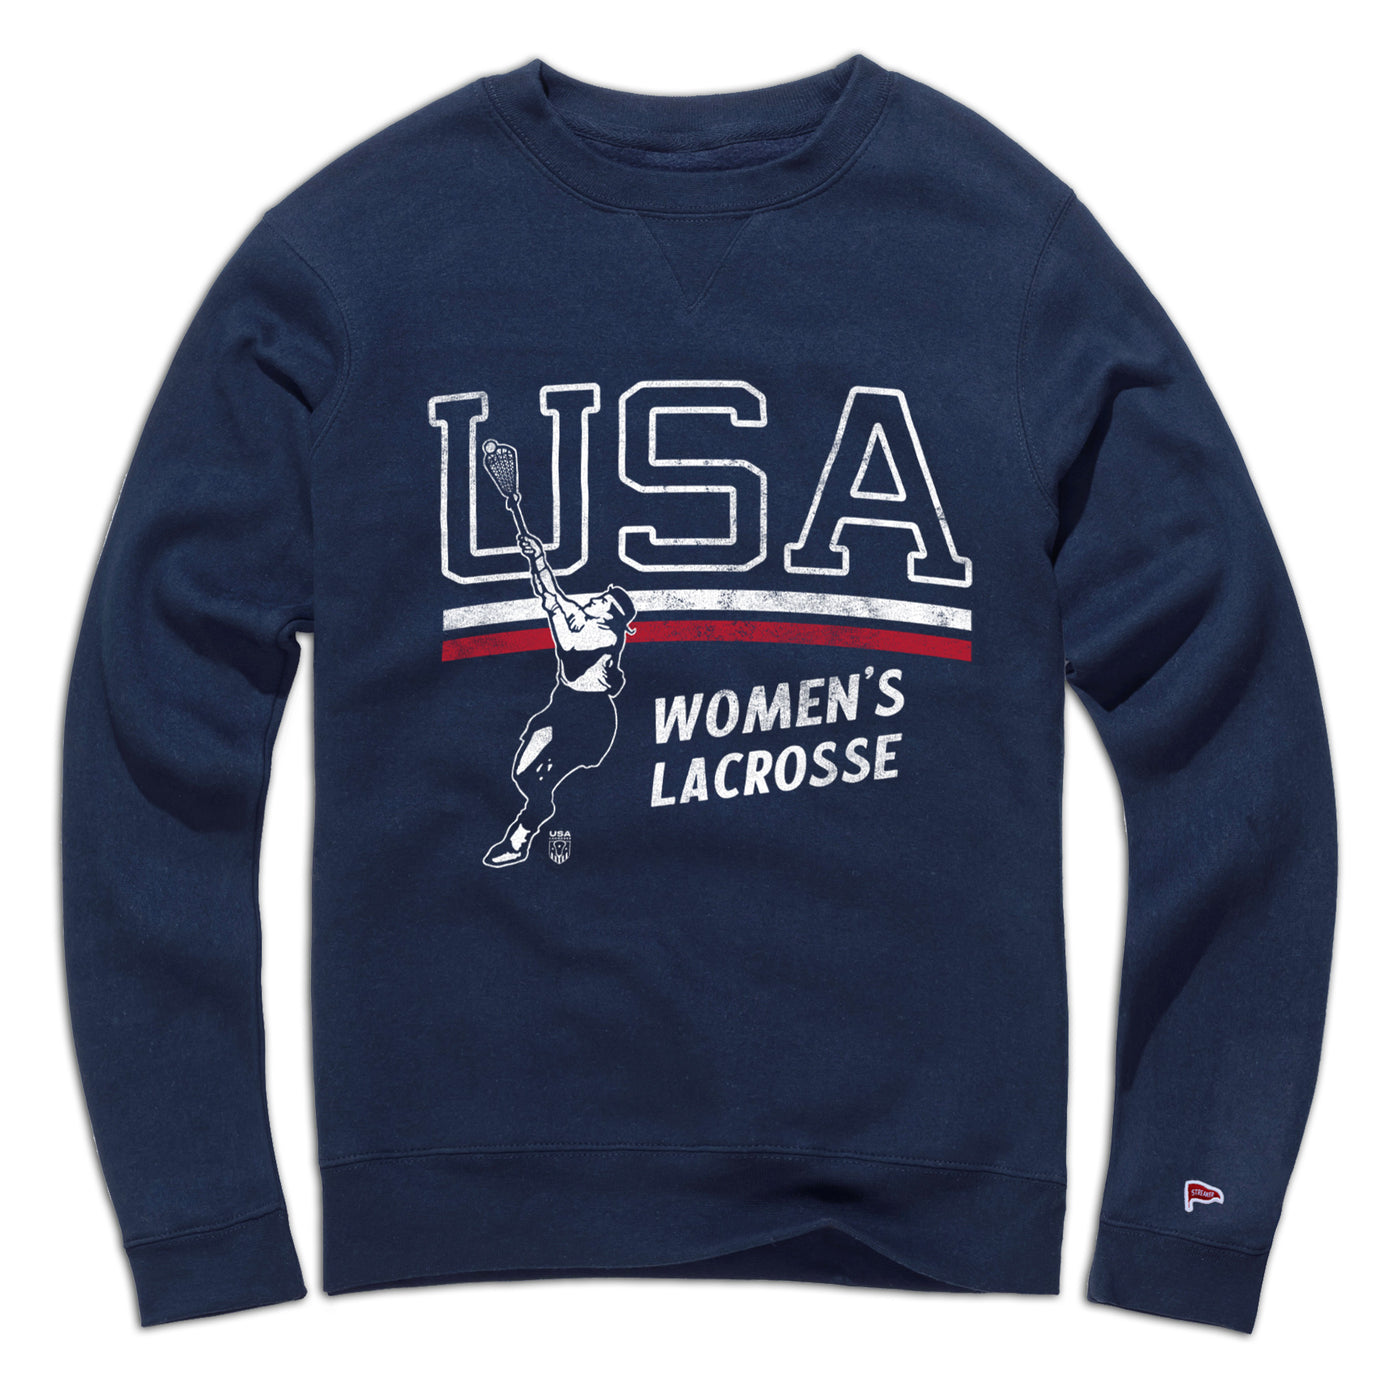 USA Women's Lacrosse Crewneck Sweatshirt - Streaker Sports